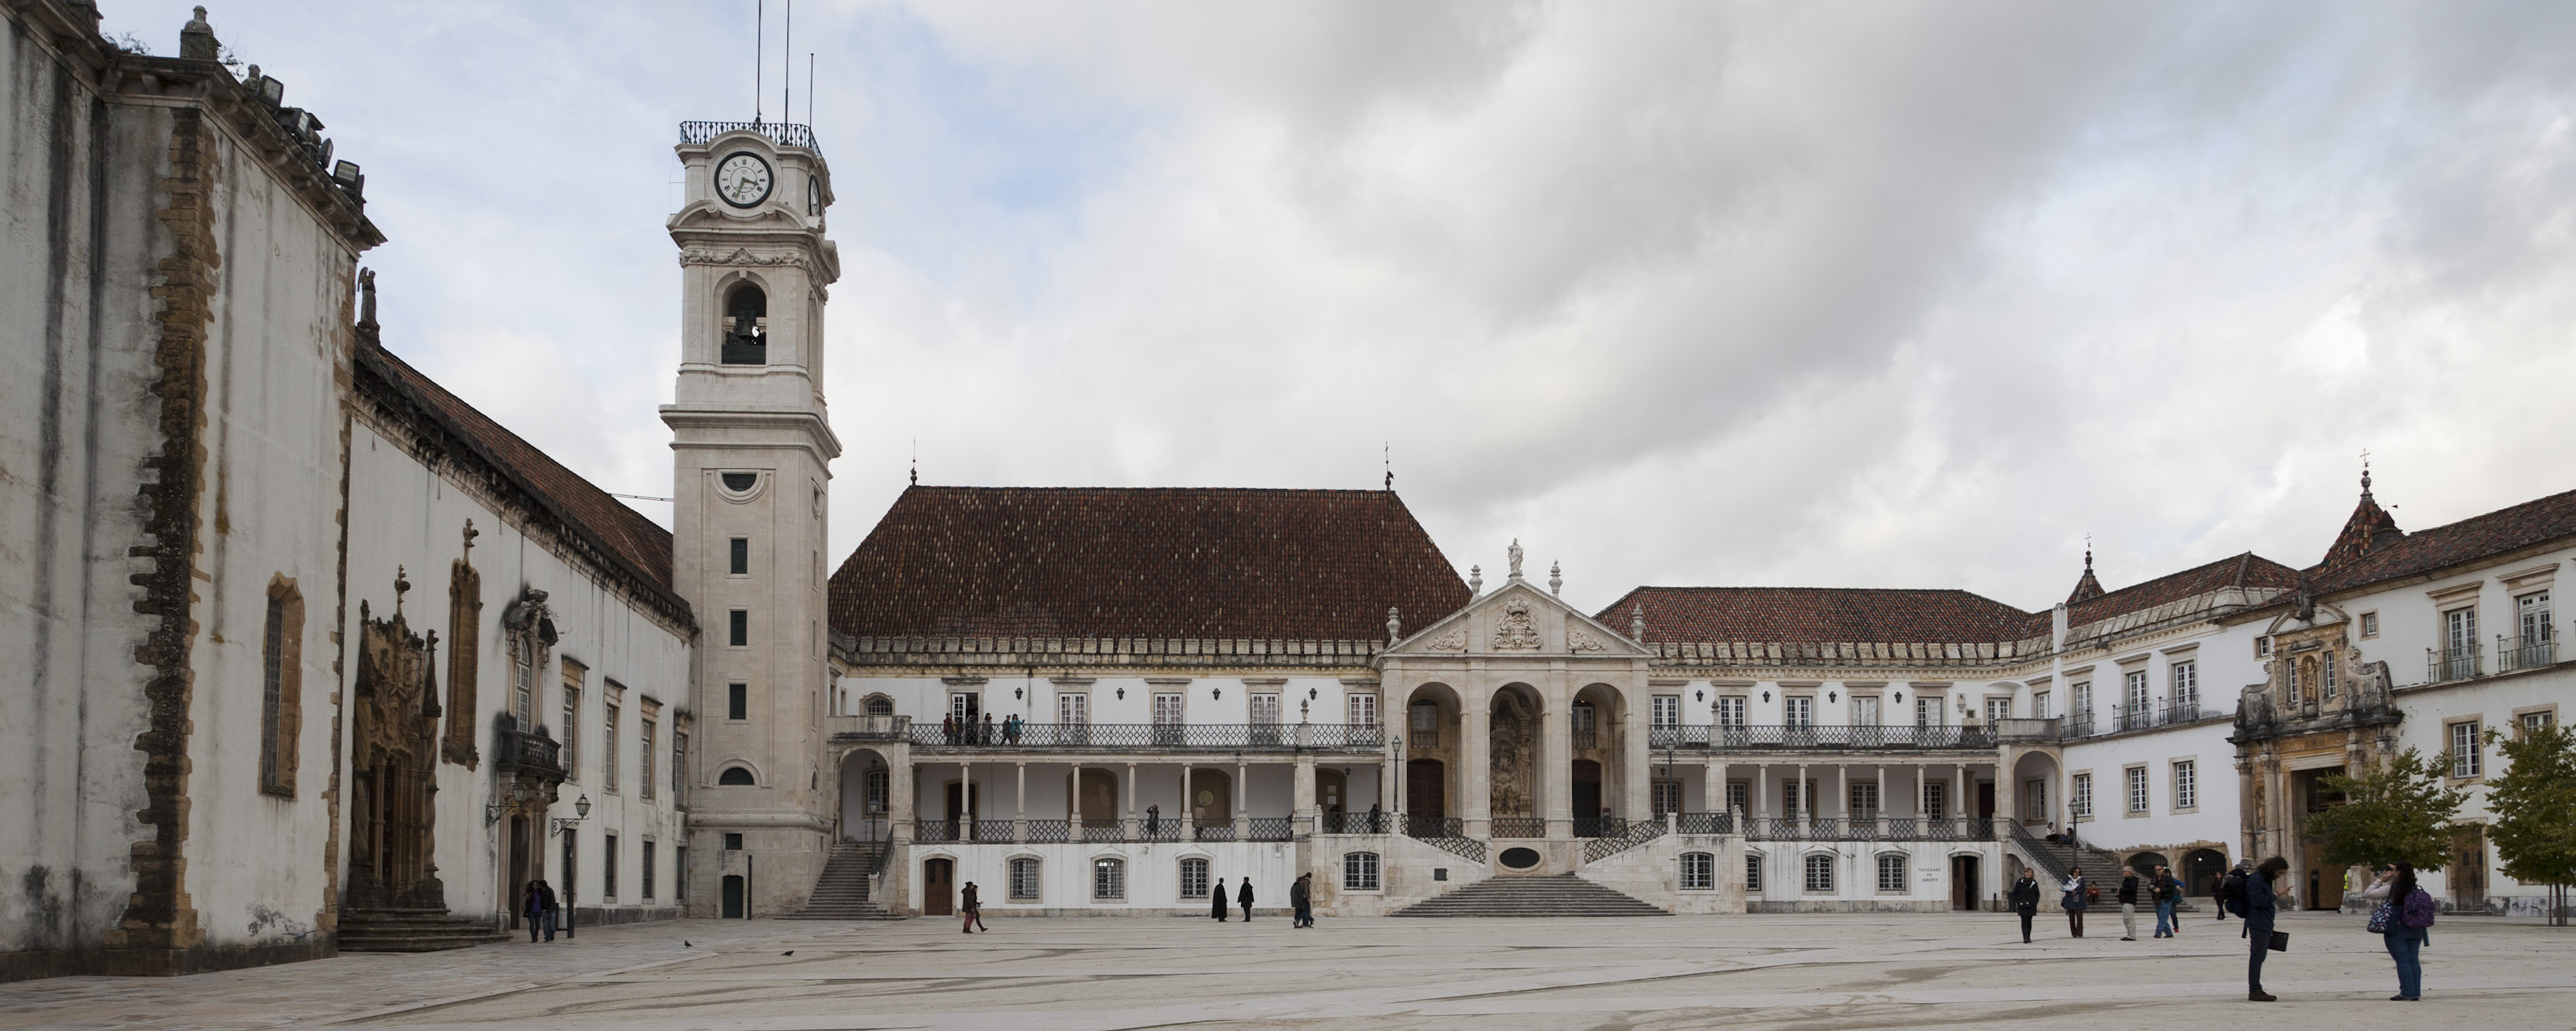 Paço das escolas, Universidade de Coimbra (DR)